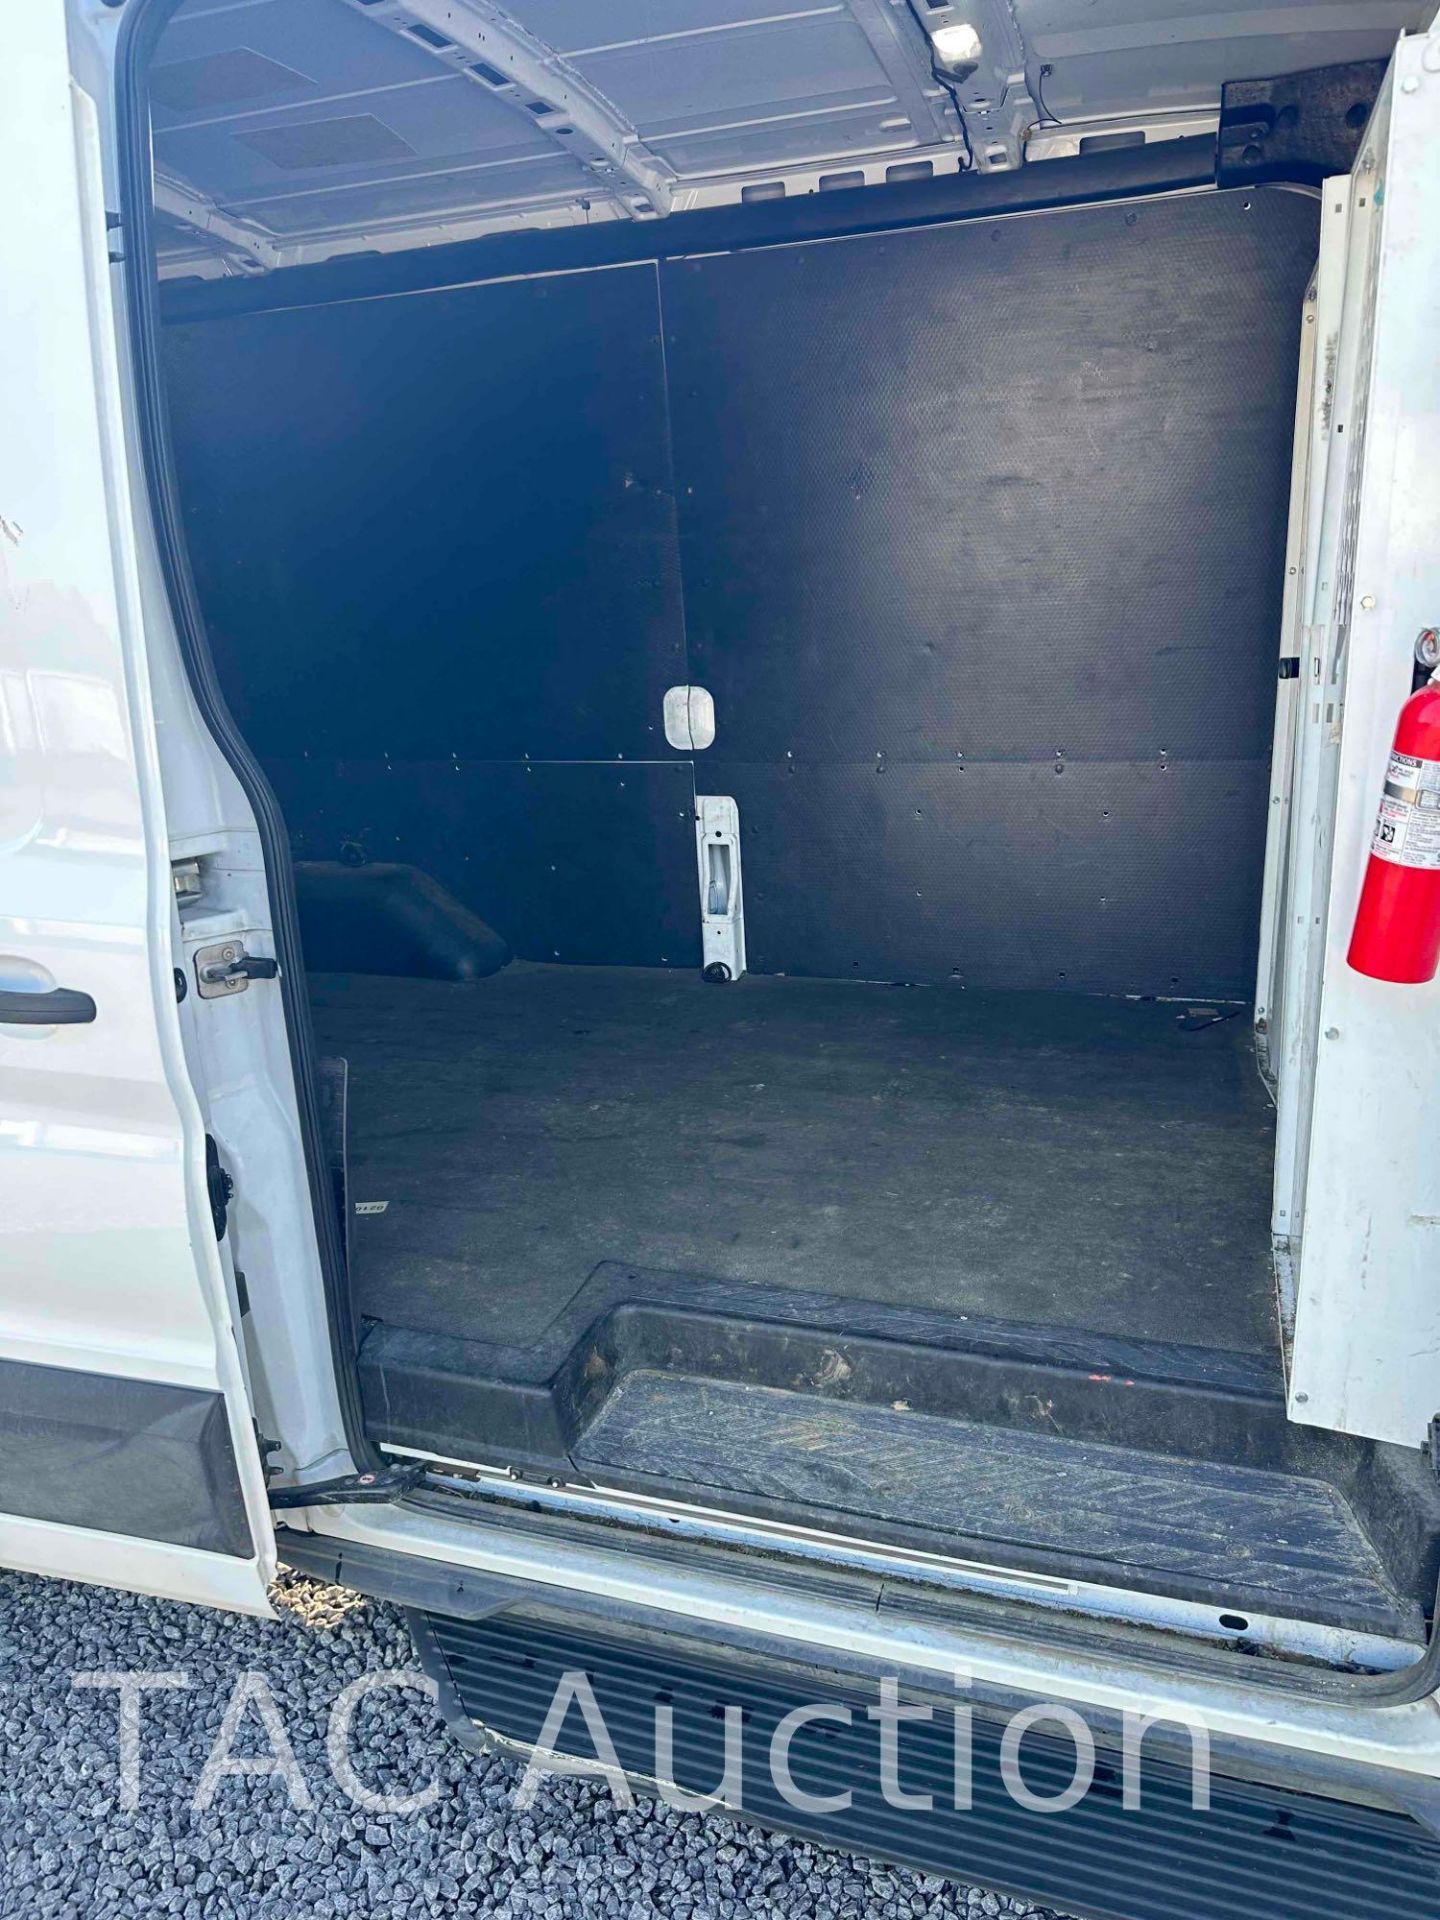 2019 Ford Transit 150 Cargo Van - Image 9 of 25